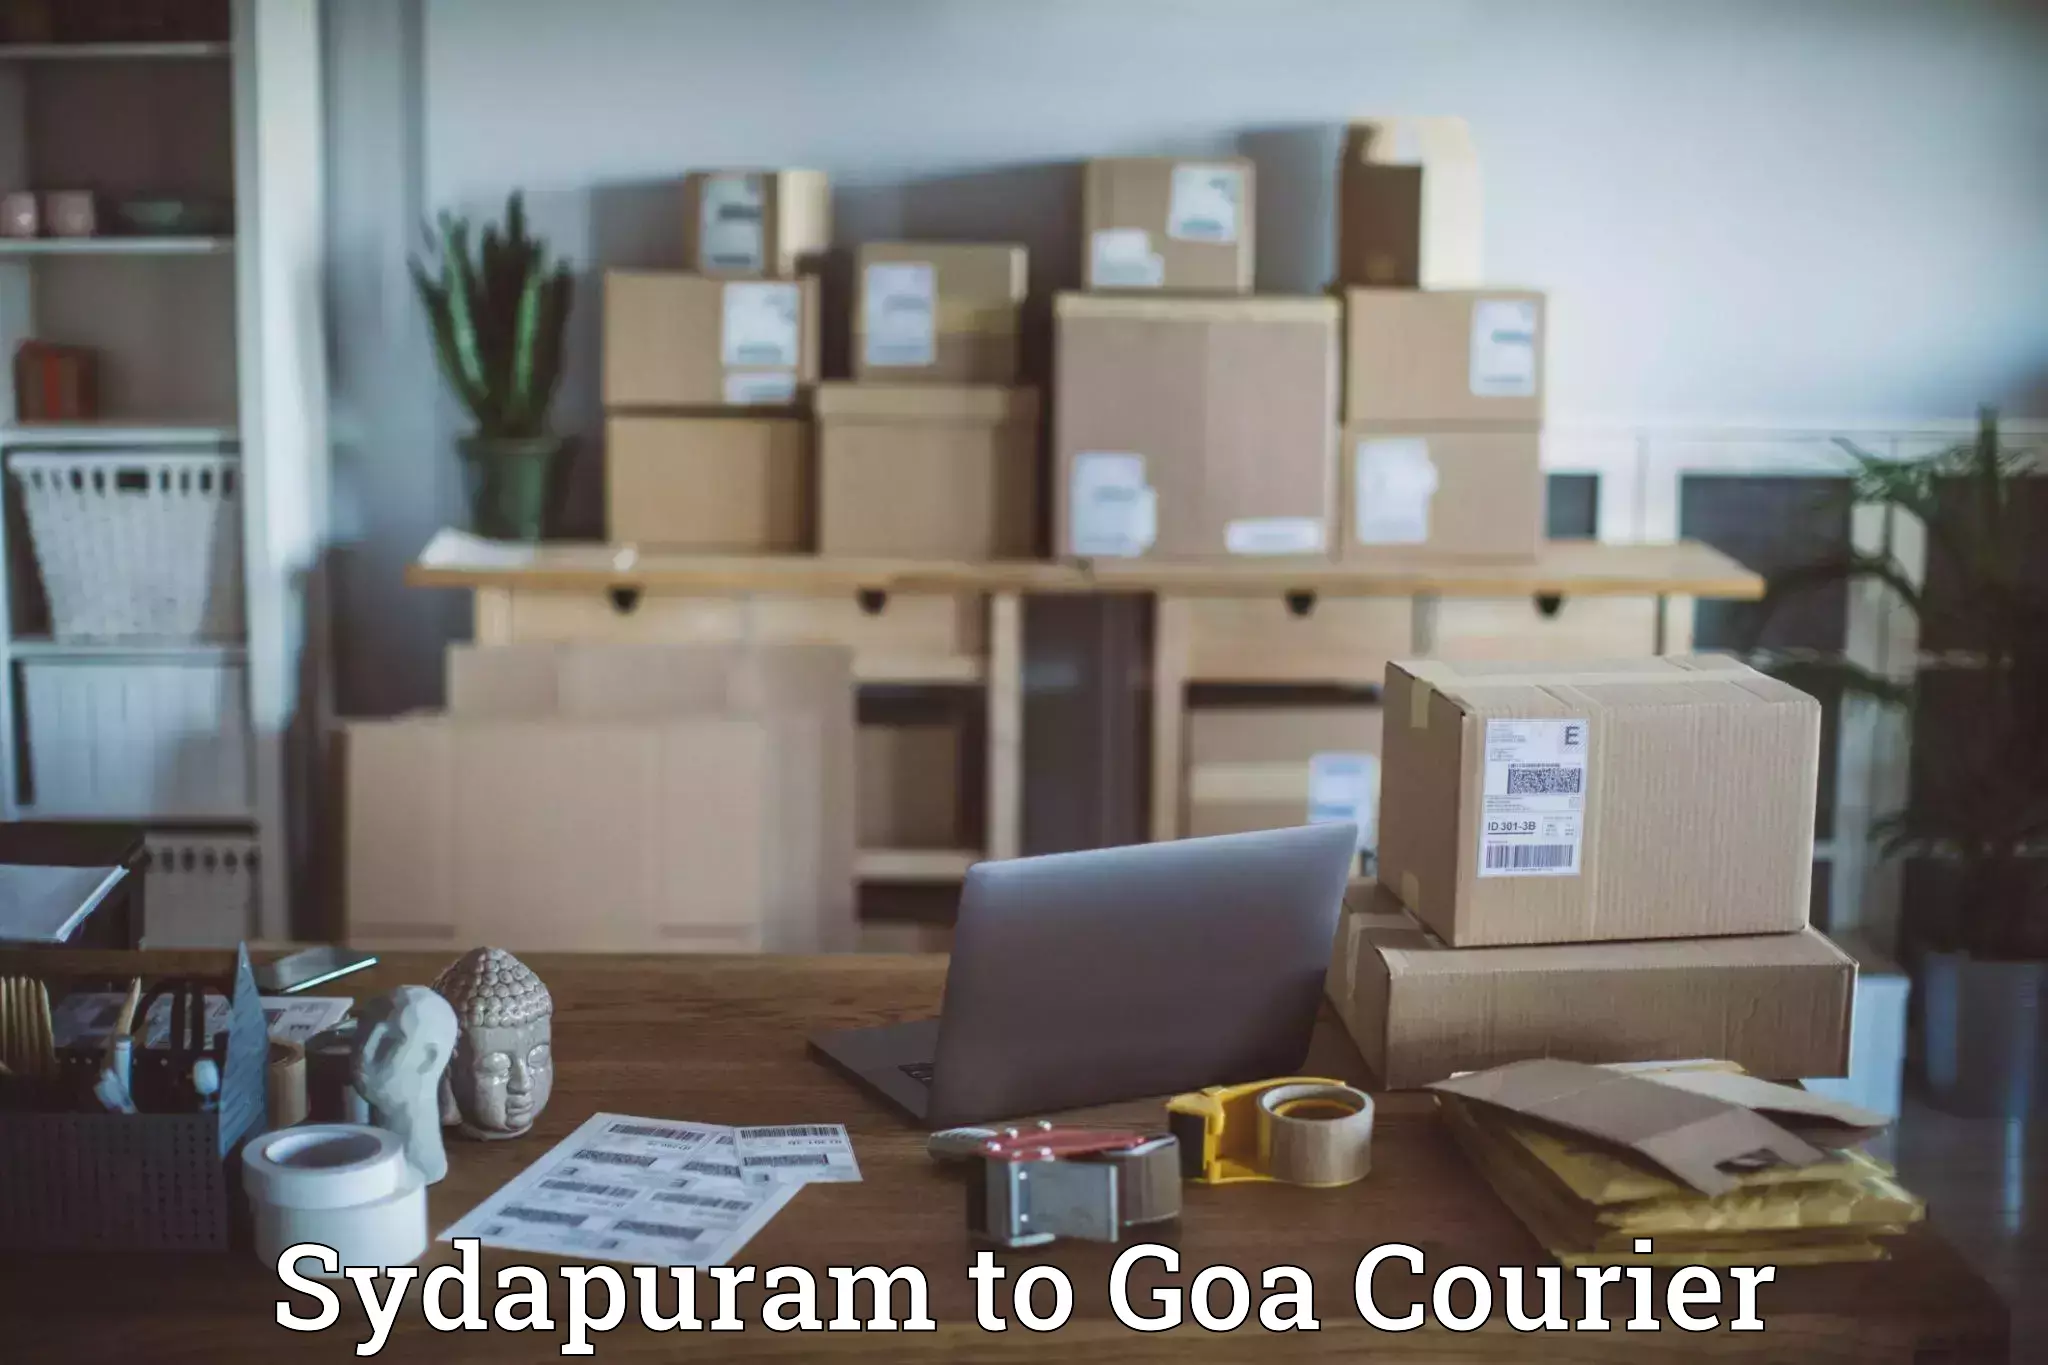 Premium courier services Sydapuram to South Goa